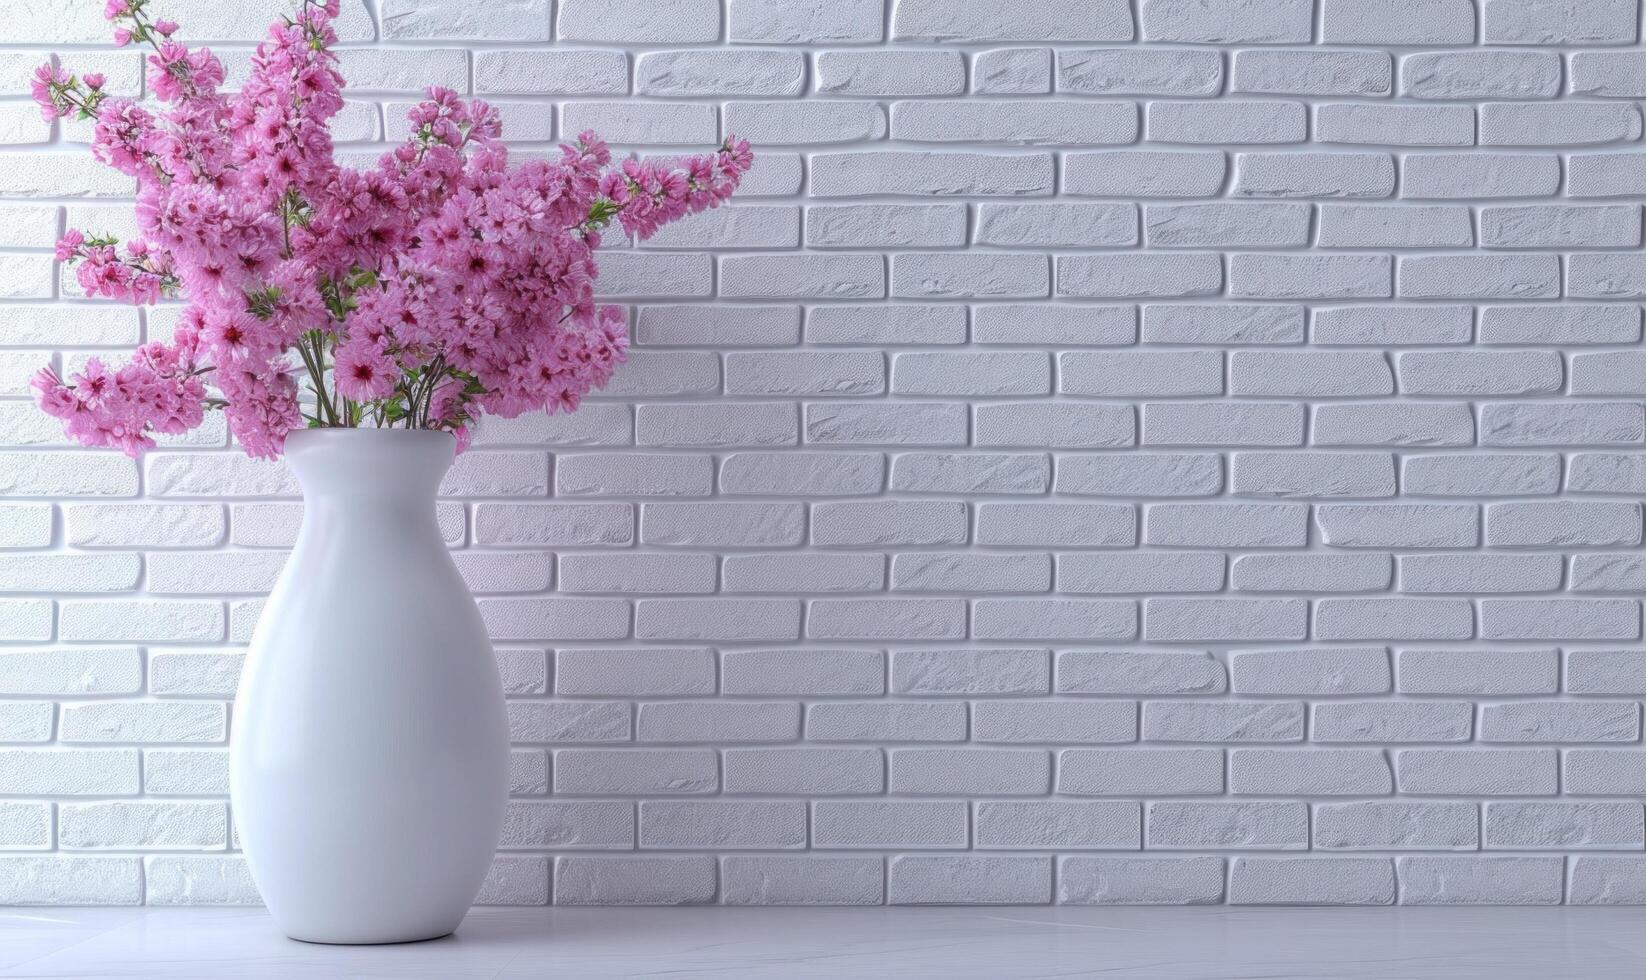 ai genererad en vit vas fylld med blommor på en trä tabell mot en tegel vägg foto